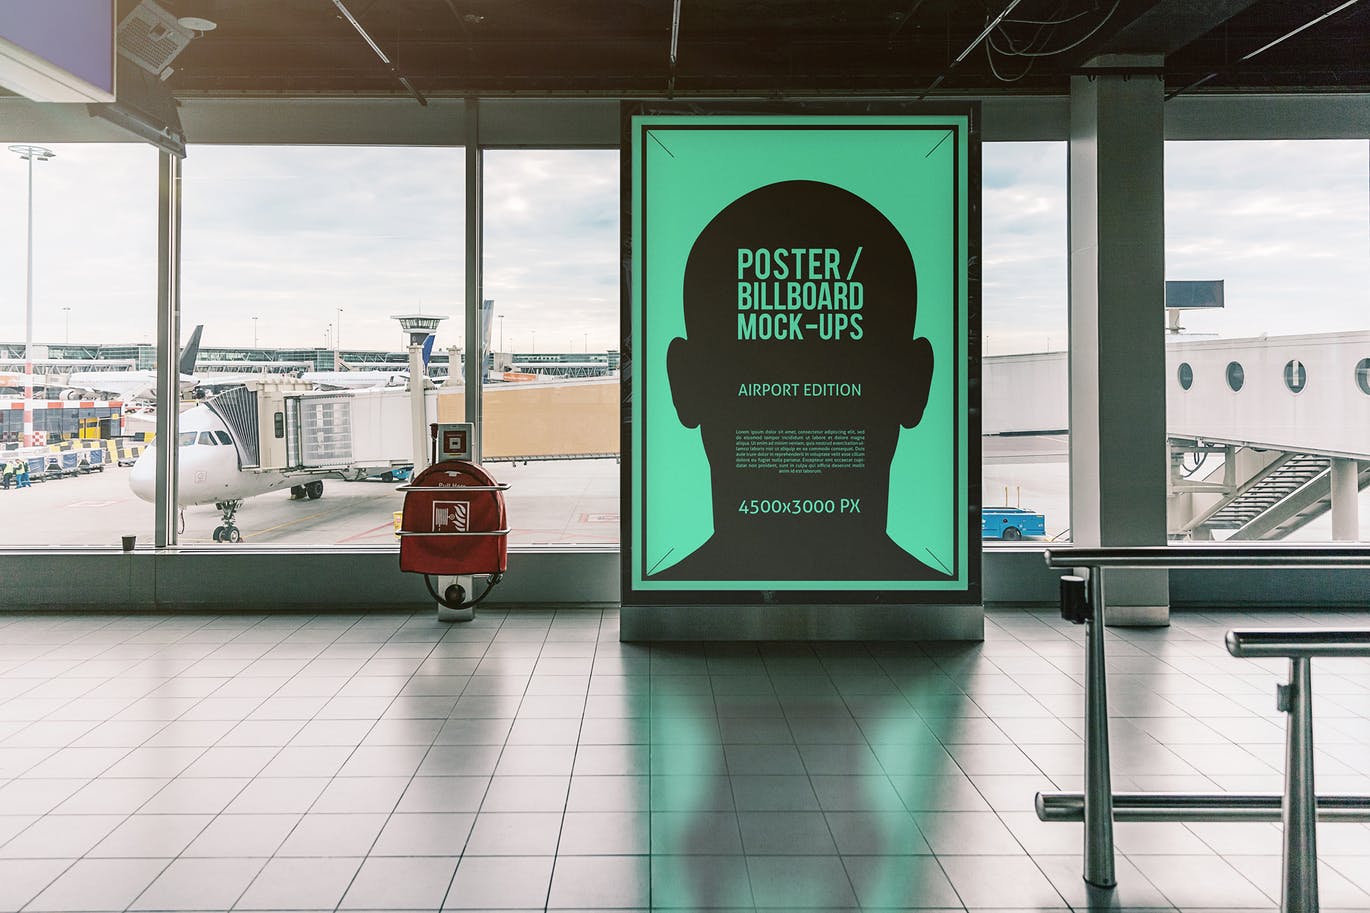 机场顾客通道海报/广告牌样机蚂蚁素材精选模板#3 Poster / Billboard Mock-ups – Airport Edition #3插图